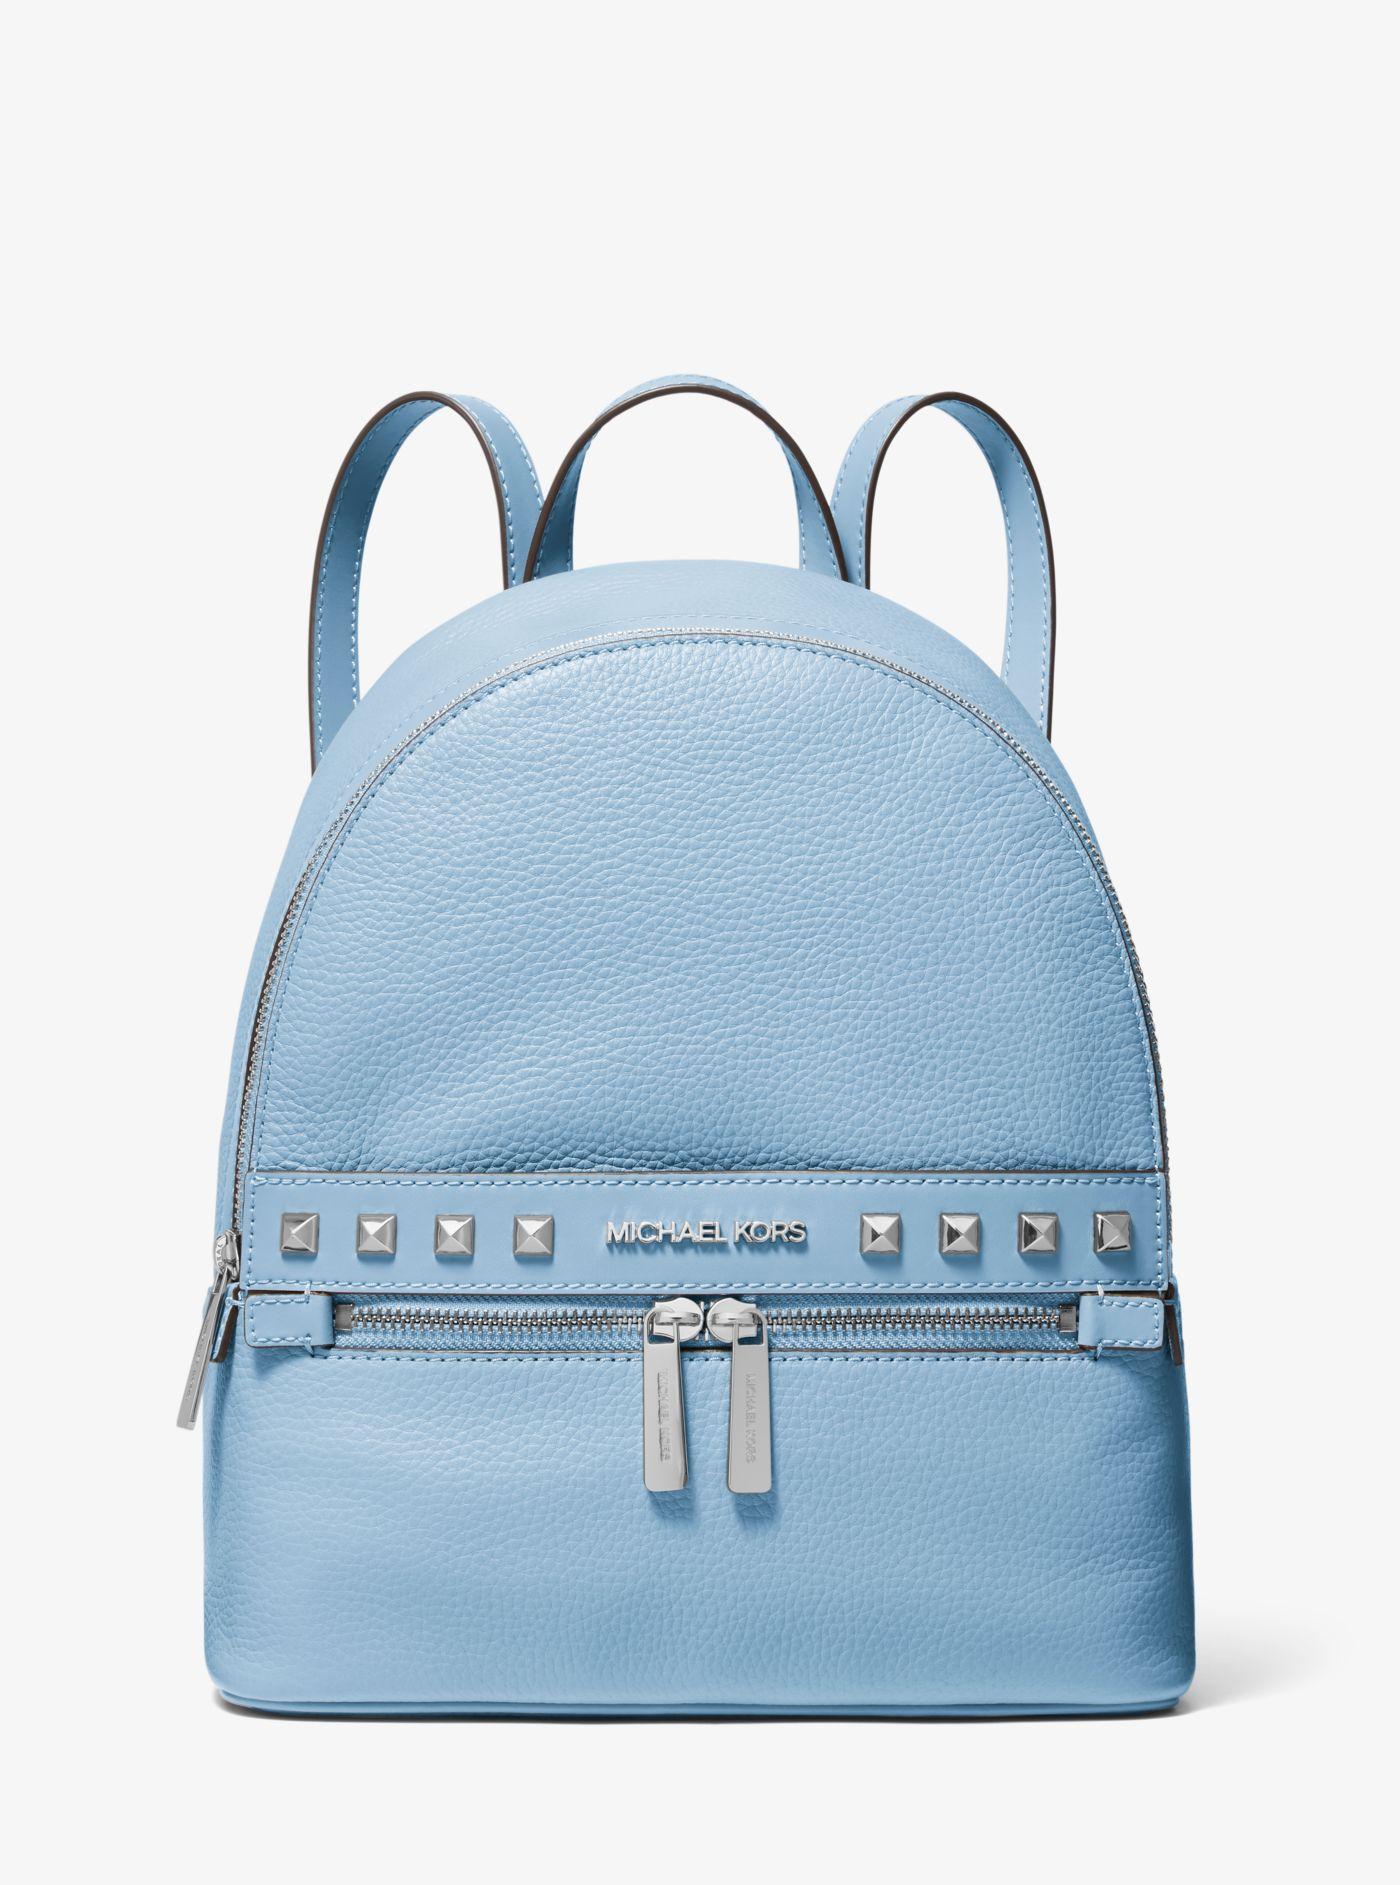 michael kors light blue backpack